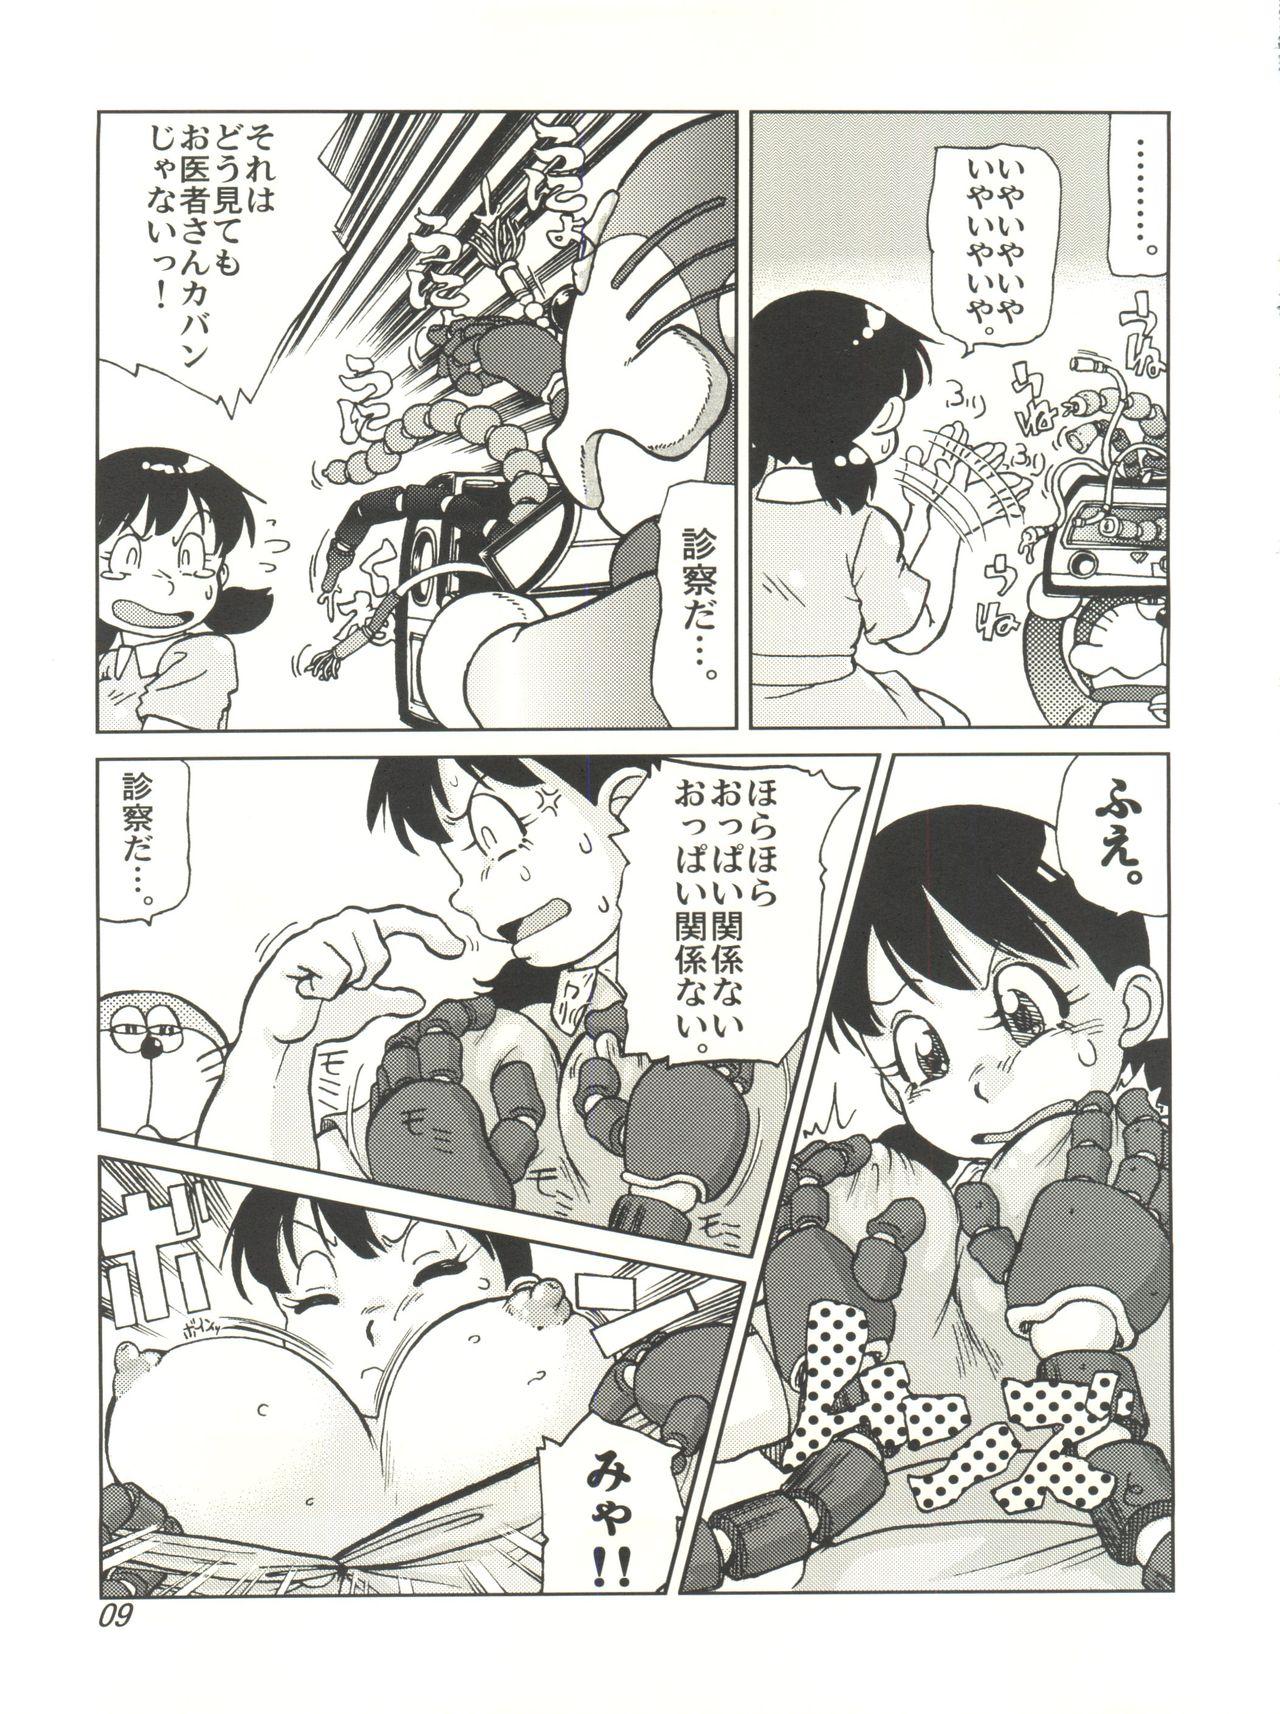 Scandal COUNTER DORA SHIZUKA & KAKUGARI GUARDIAN - Doraemon Blows - Page 8